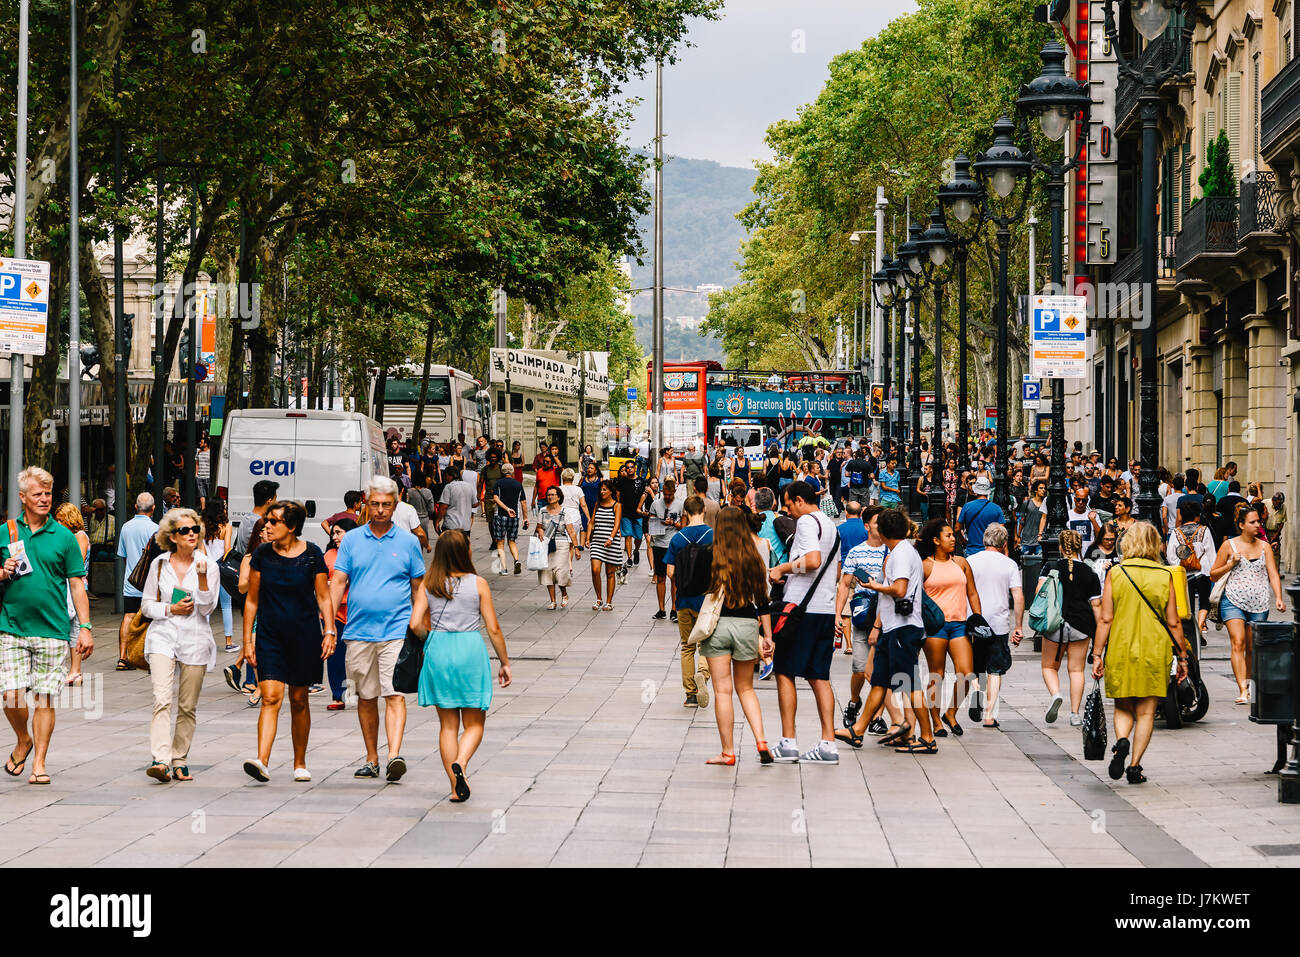 BARCELONA, Spanien - 5. August 2016: Alltag In der belebten Innenstadt von Barcelona Spanien. Stockfoto